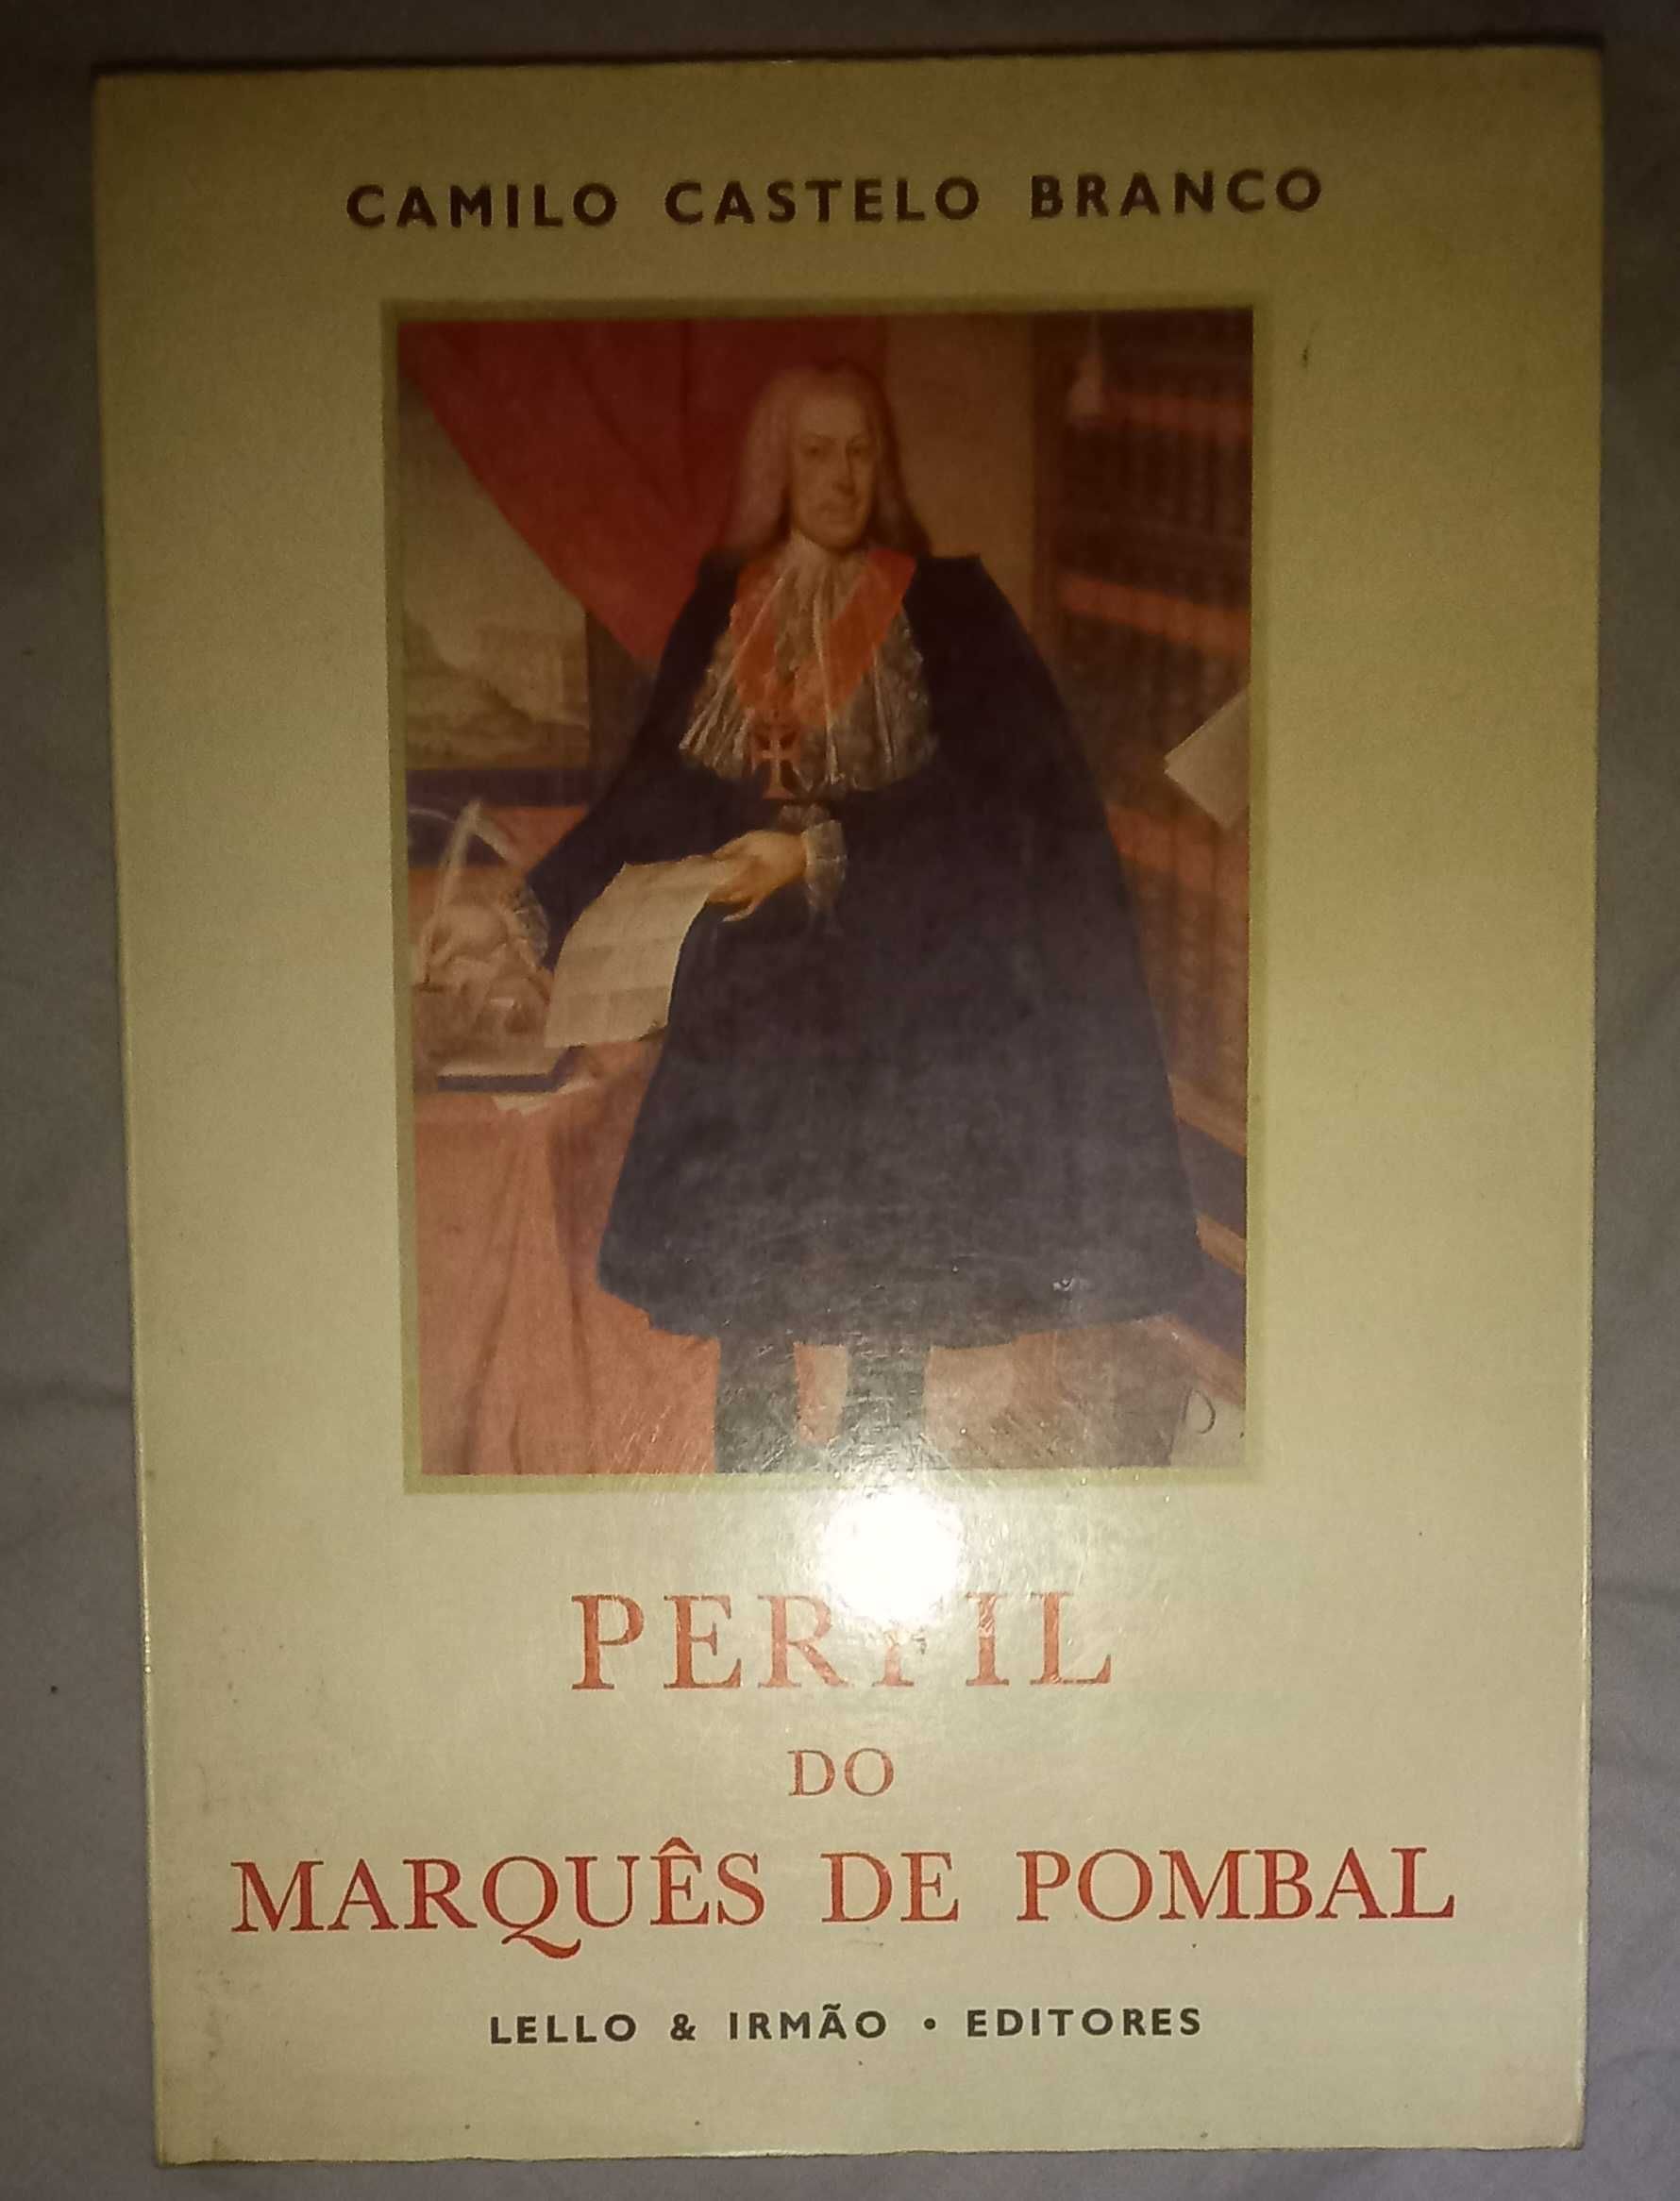 Marquês de Pombal de Camilo Castelo Branco e Agustina Bessa-luís